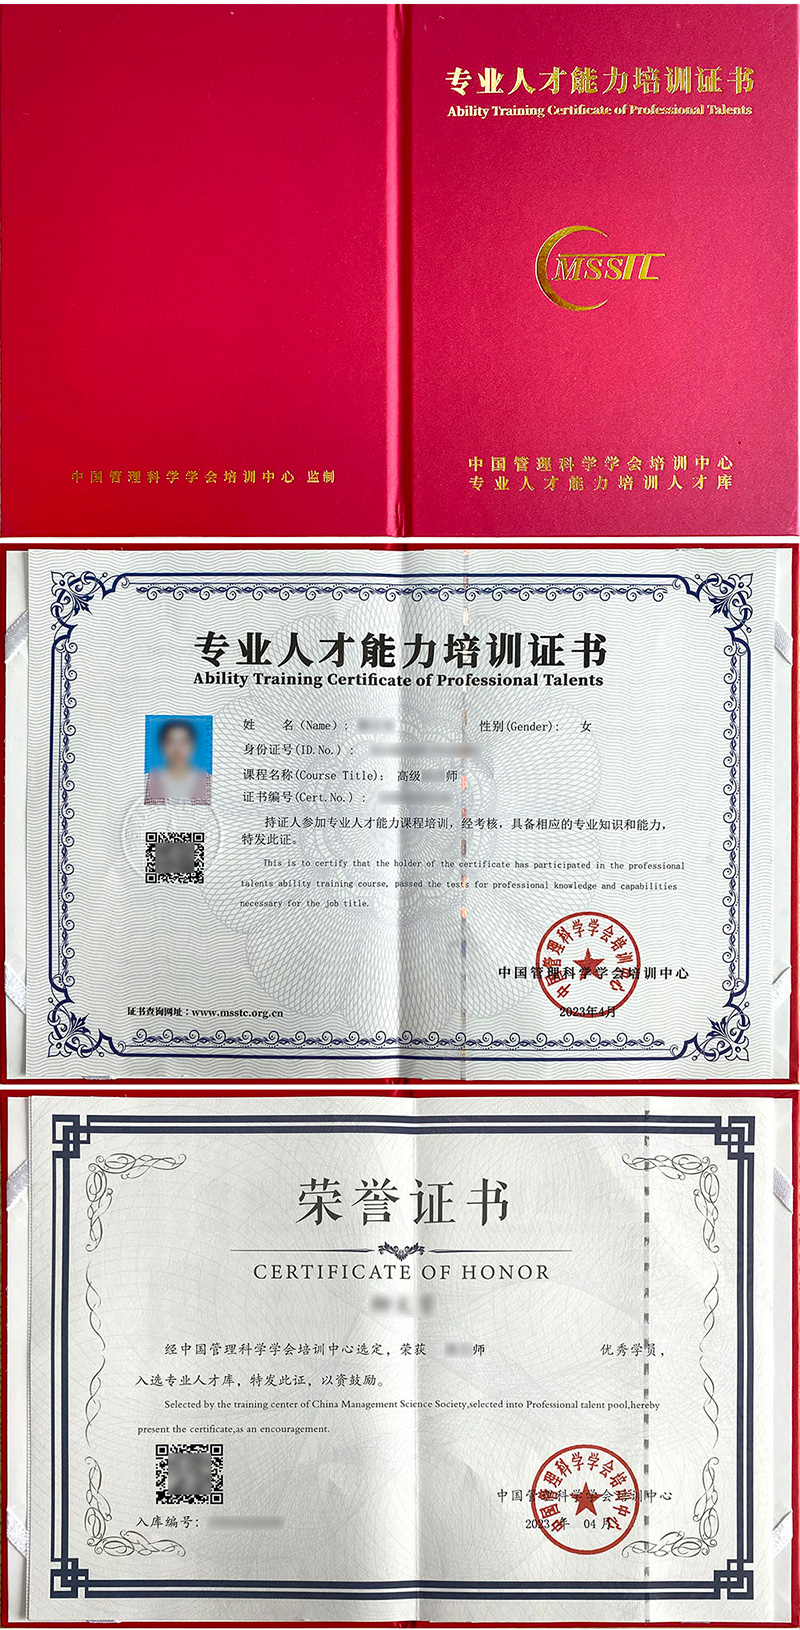 中国管理科学学会培训中心 专业人才能力培训证书 人力资源法务师证书样本